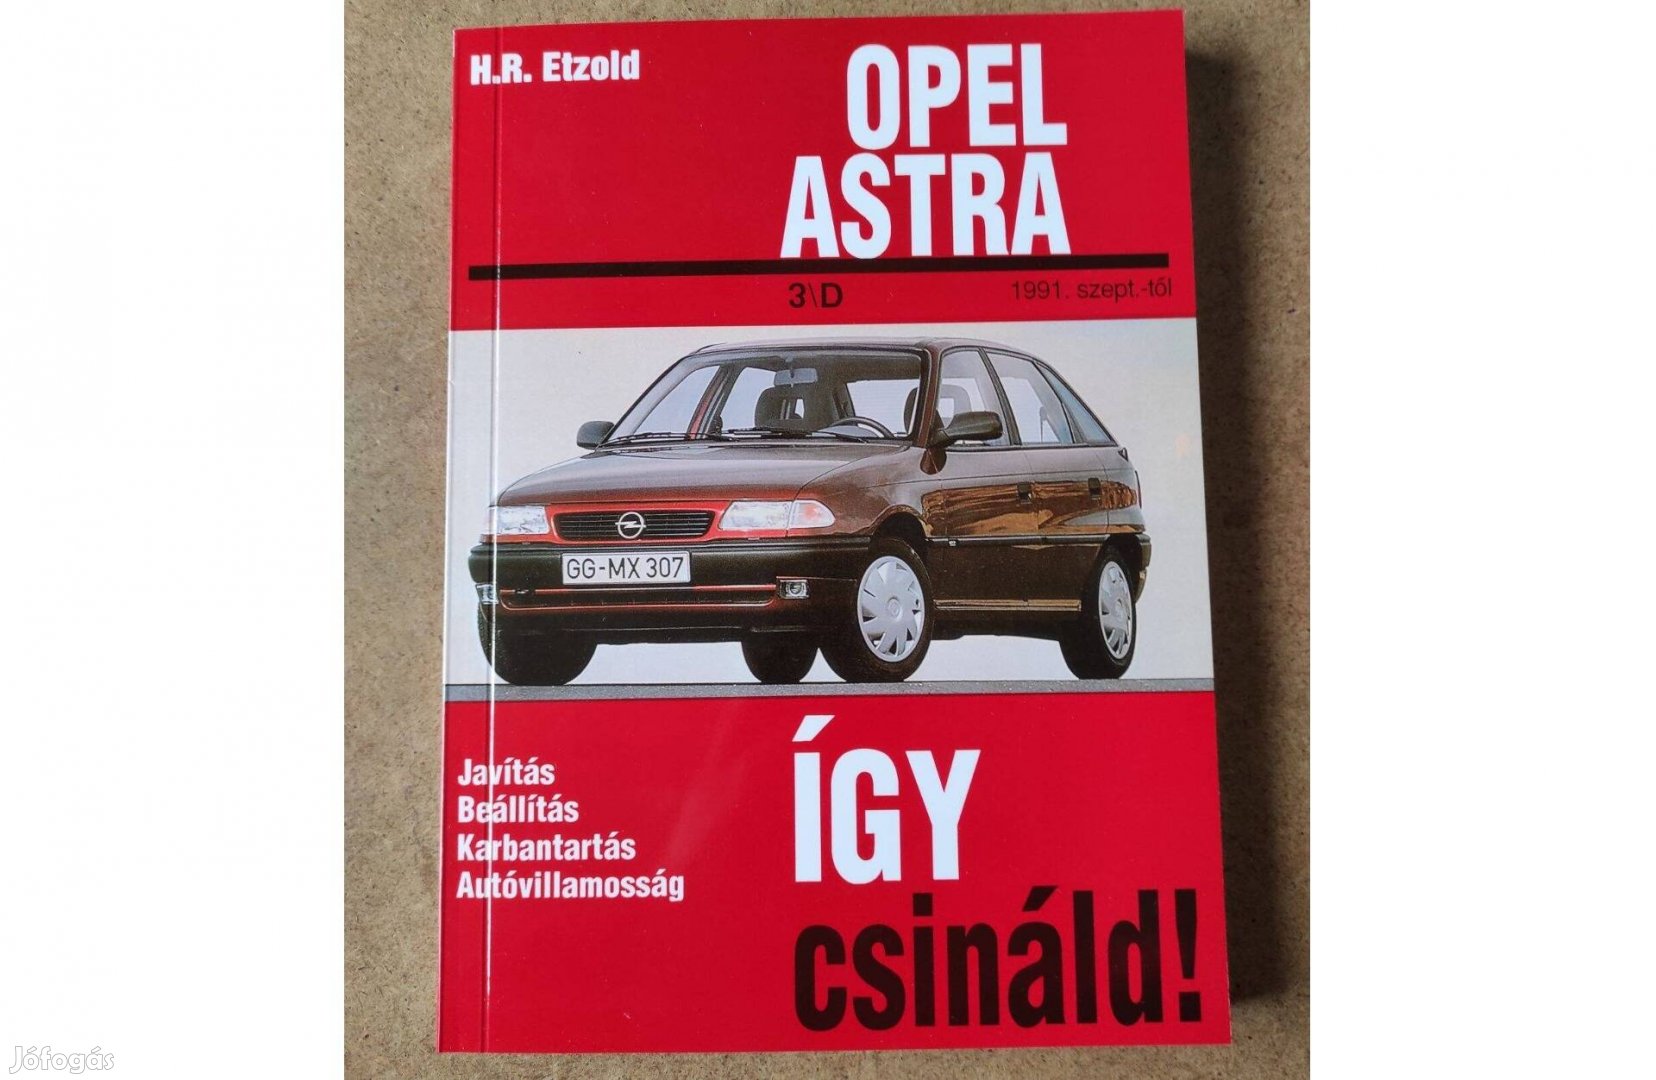 Opel Astra javítási karbantartási könyv. Így csináld